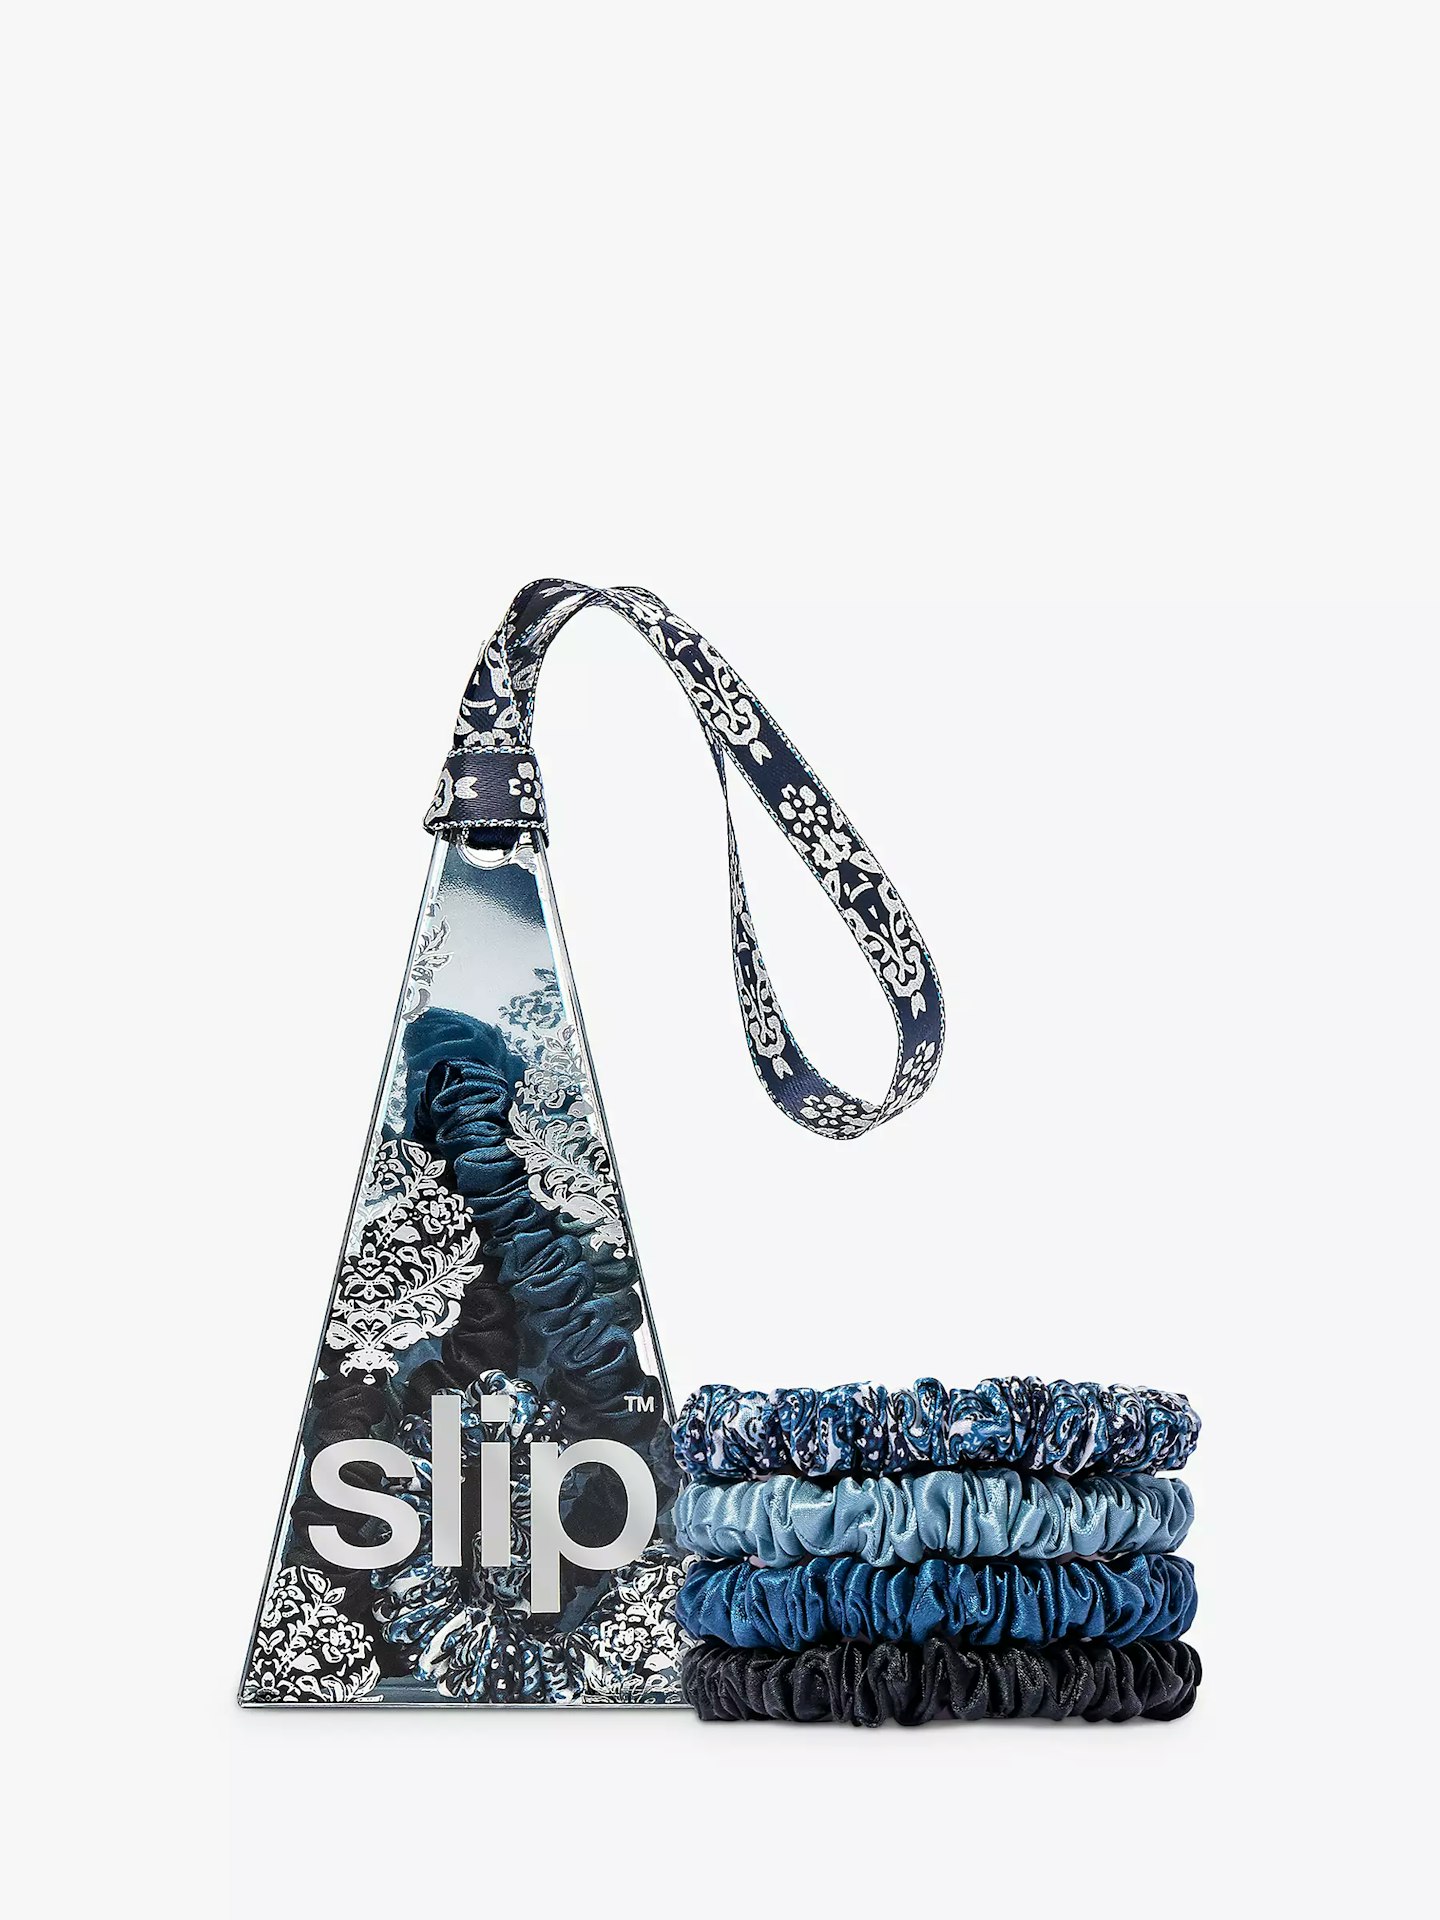 Slip Skinny Scrunchies Ornament Hair Care Gift Set